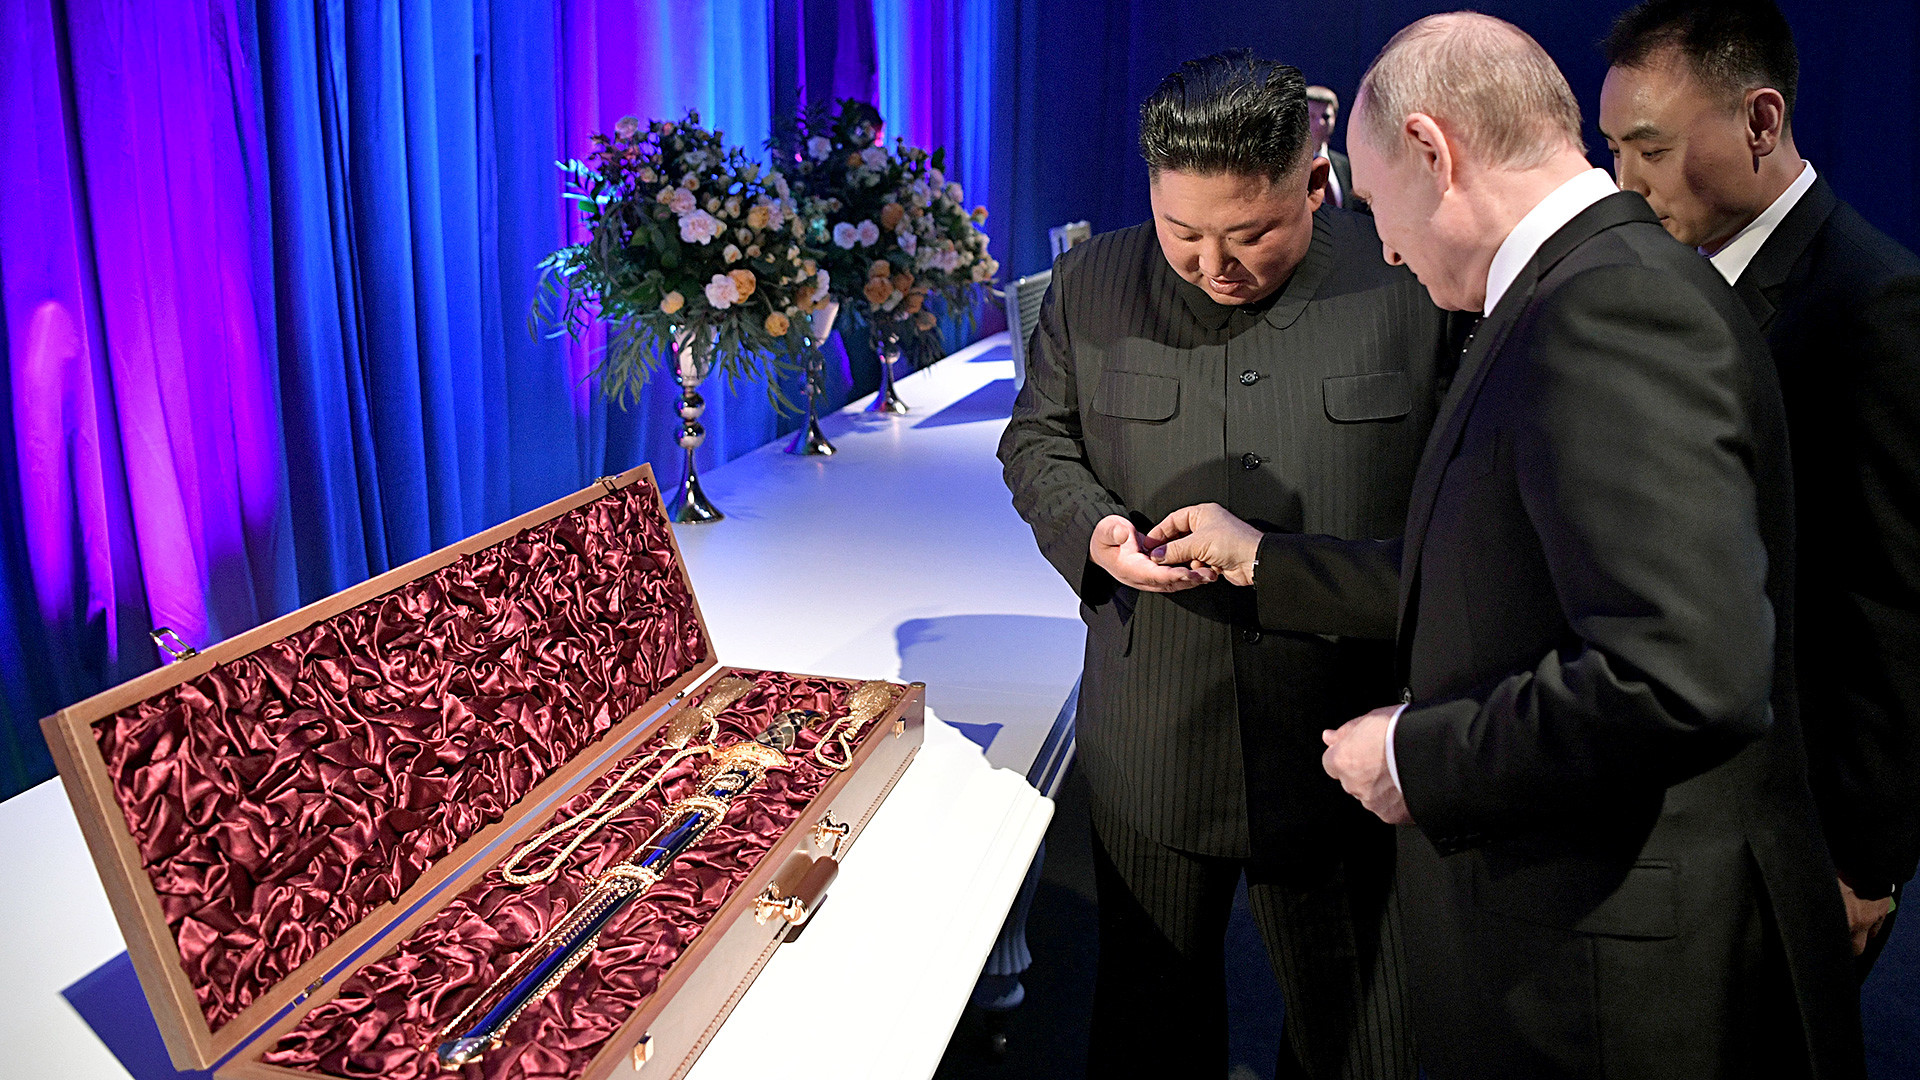 2019年にプーチン大統領と北朝鮮指導者、金正恩が会談した際、後者はロシアの指導者へ、朝鮮の剣を贈った。